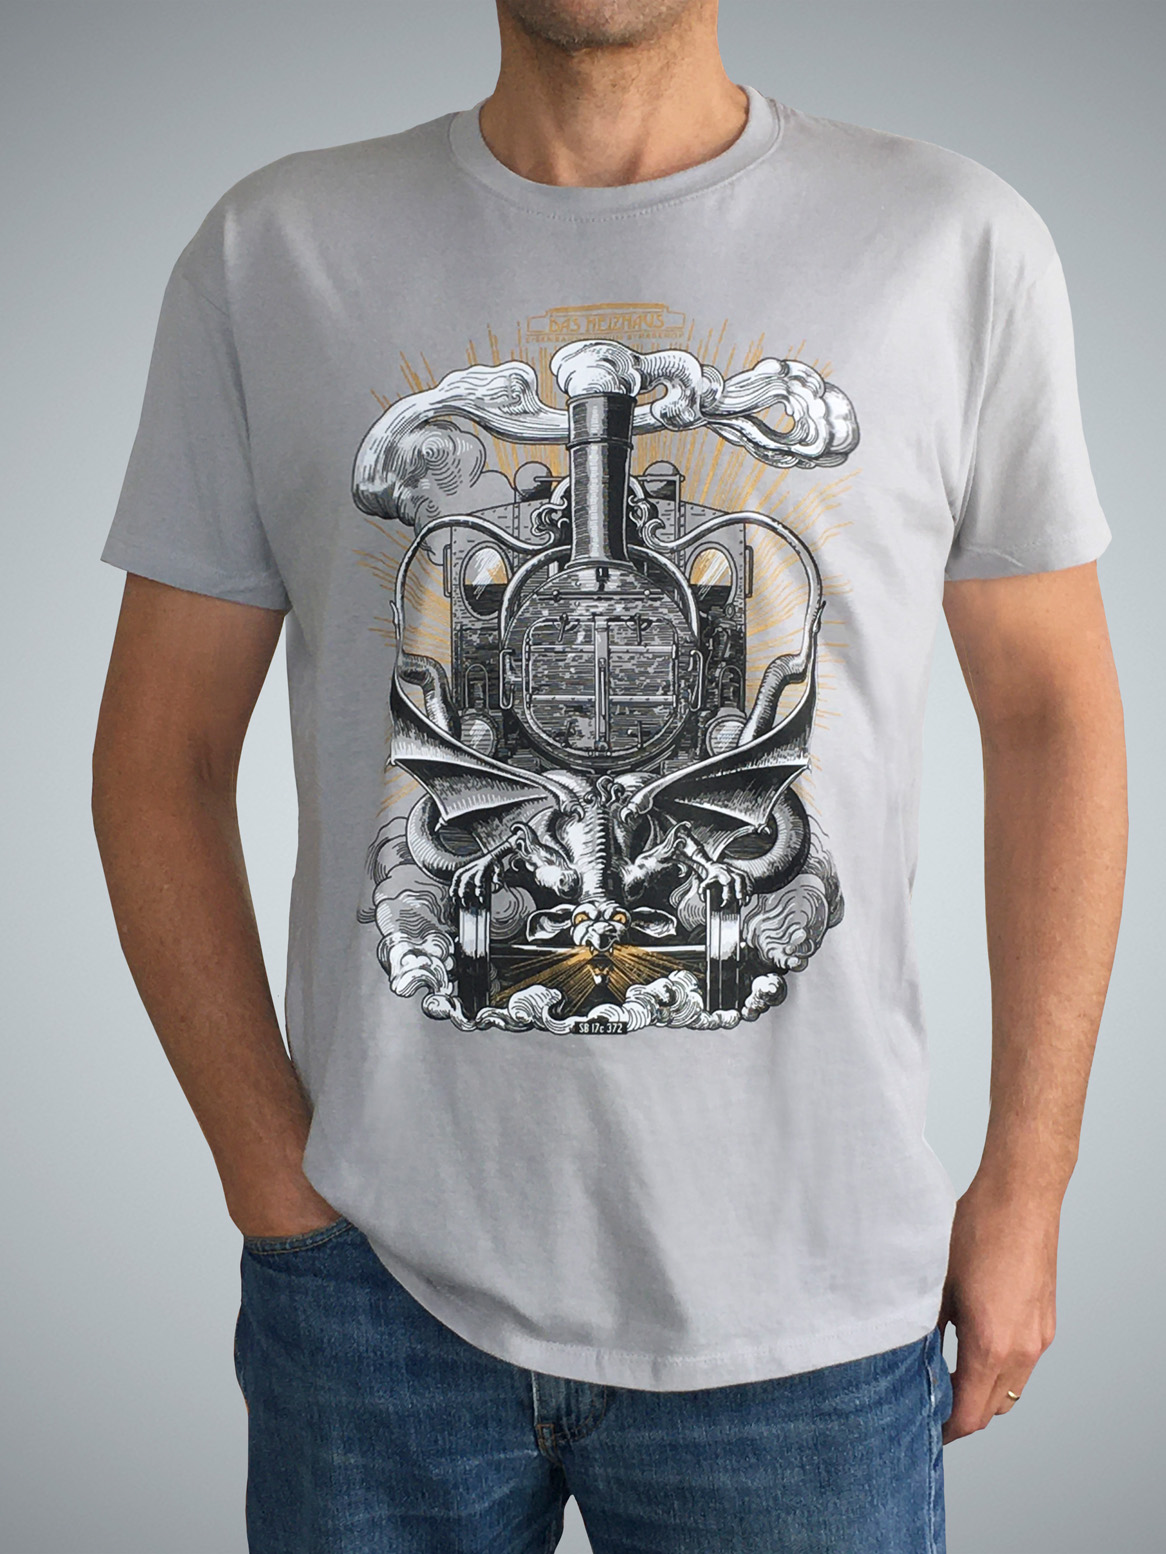 T-Shirt "Steampunk" für Kinder